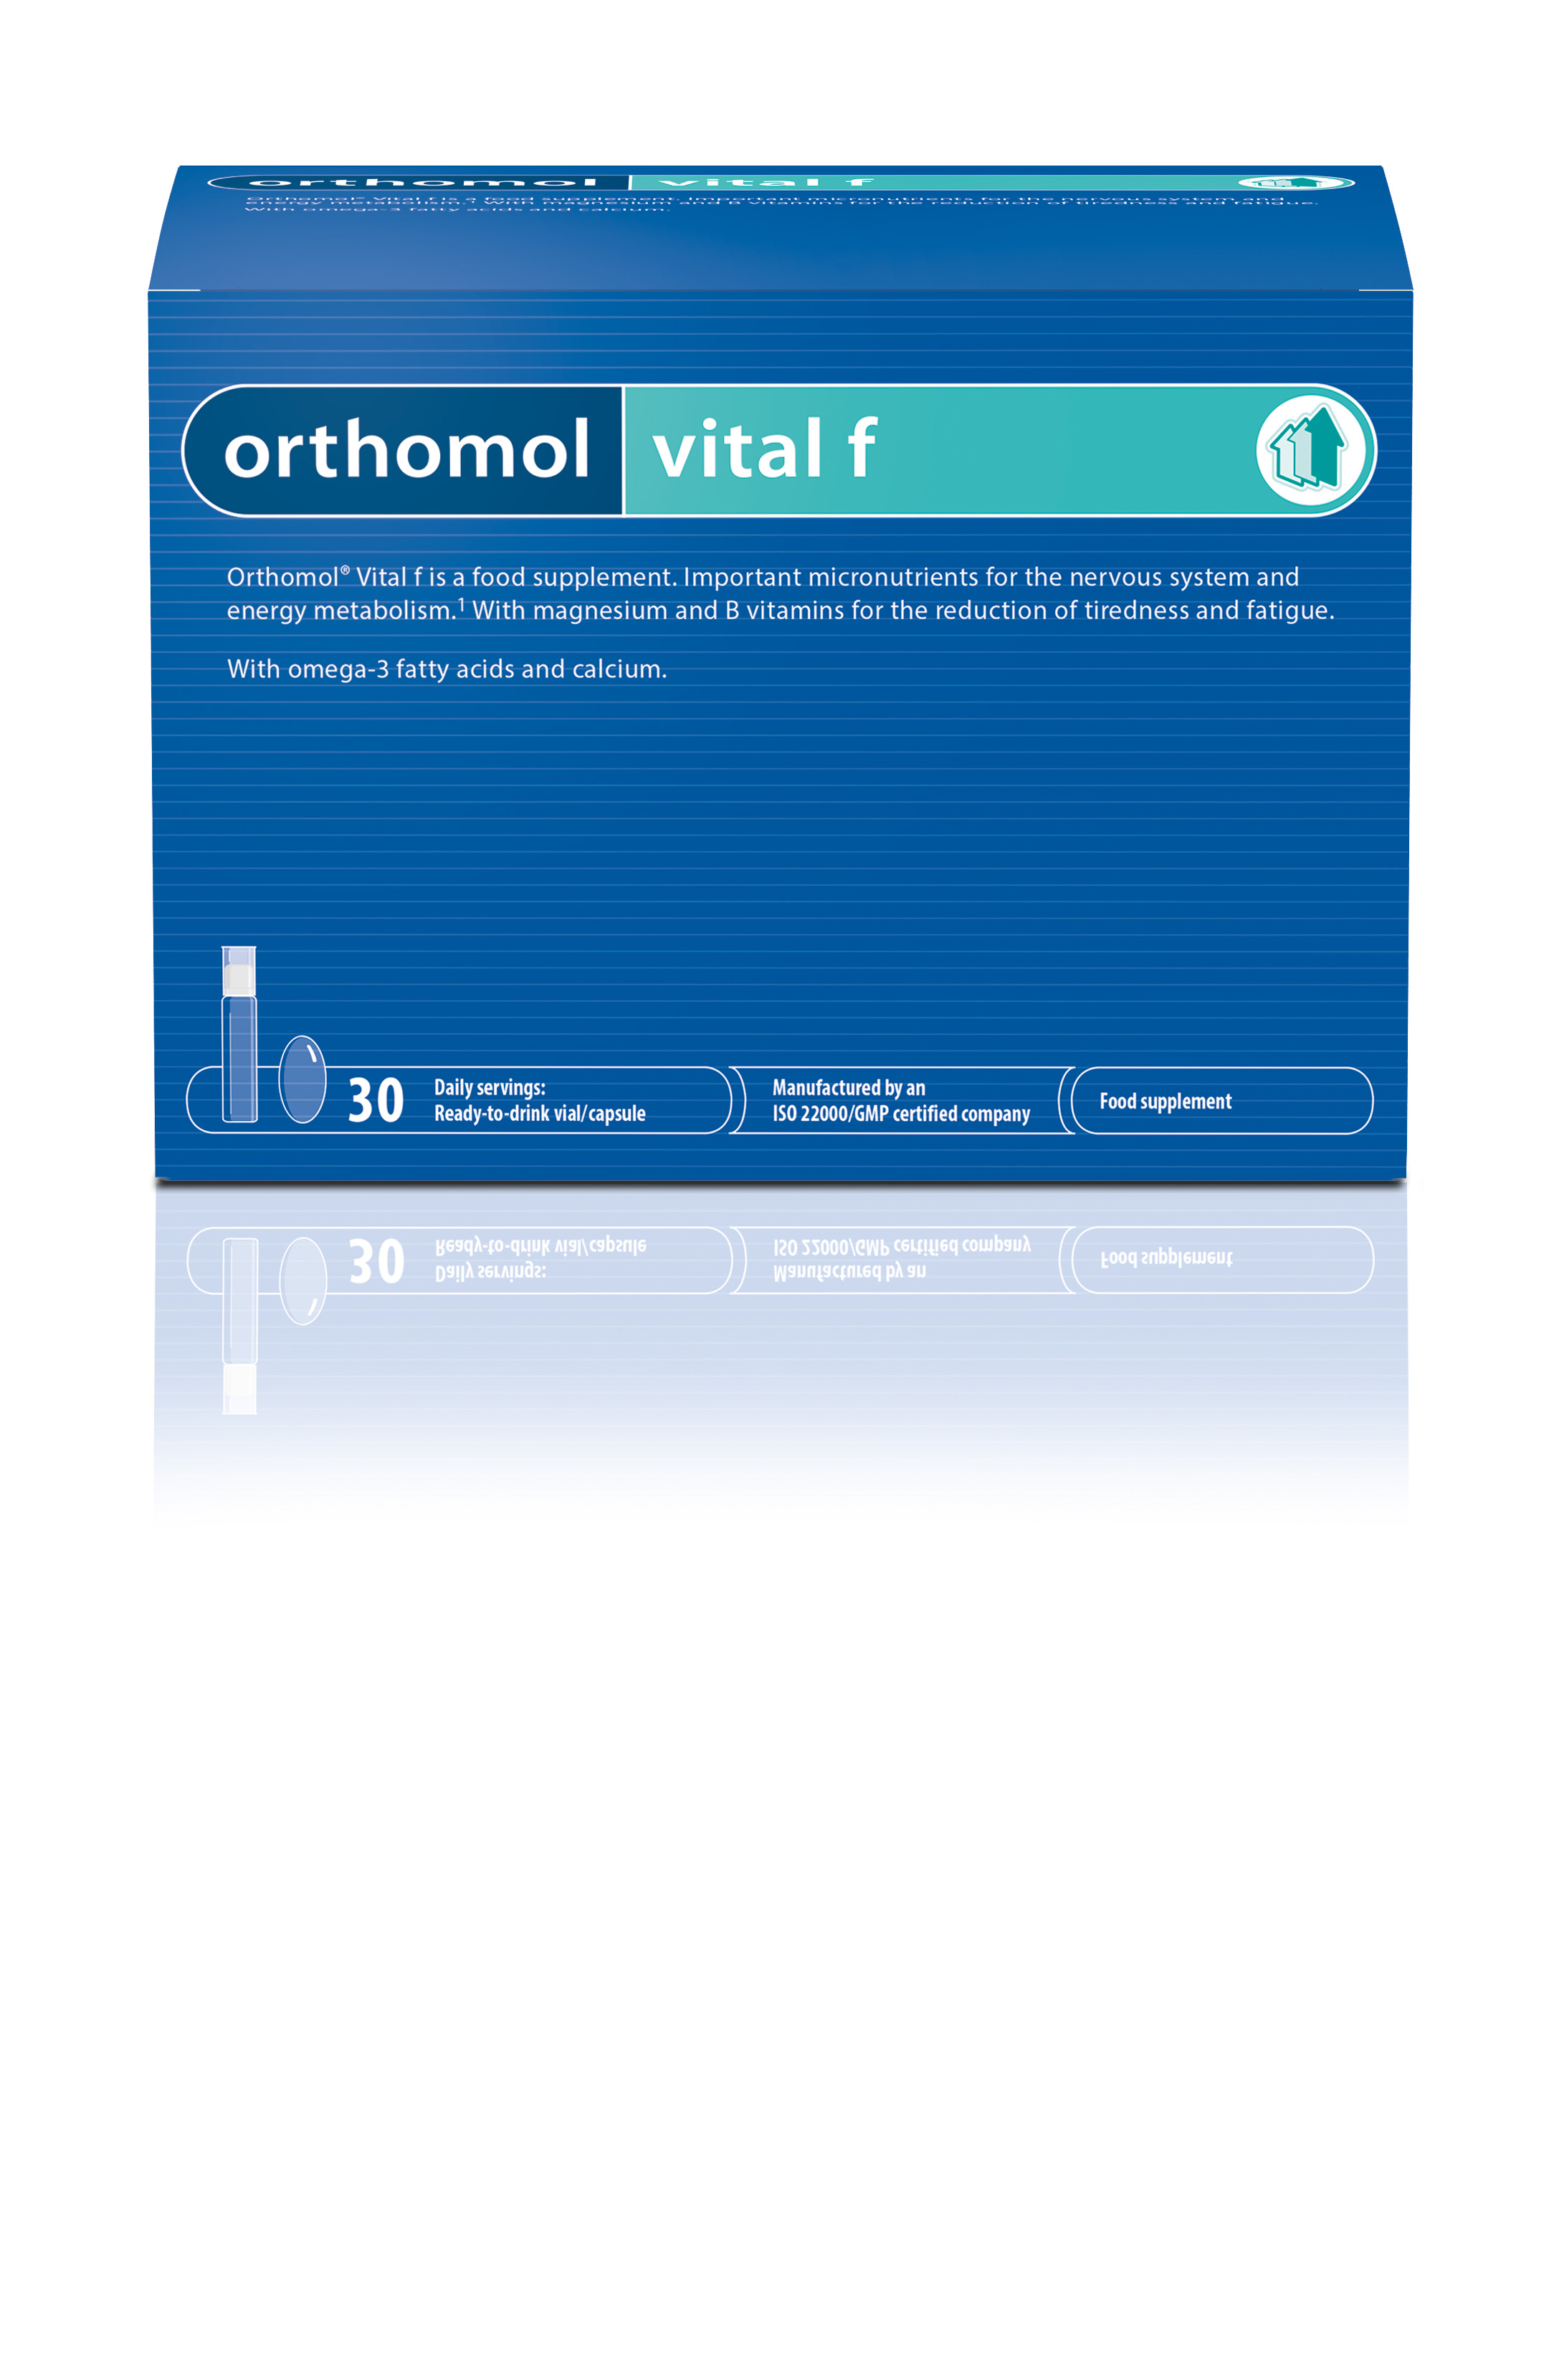 Orthomol vital f